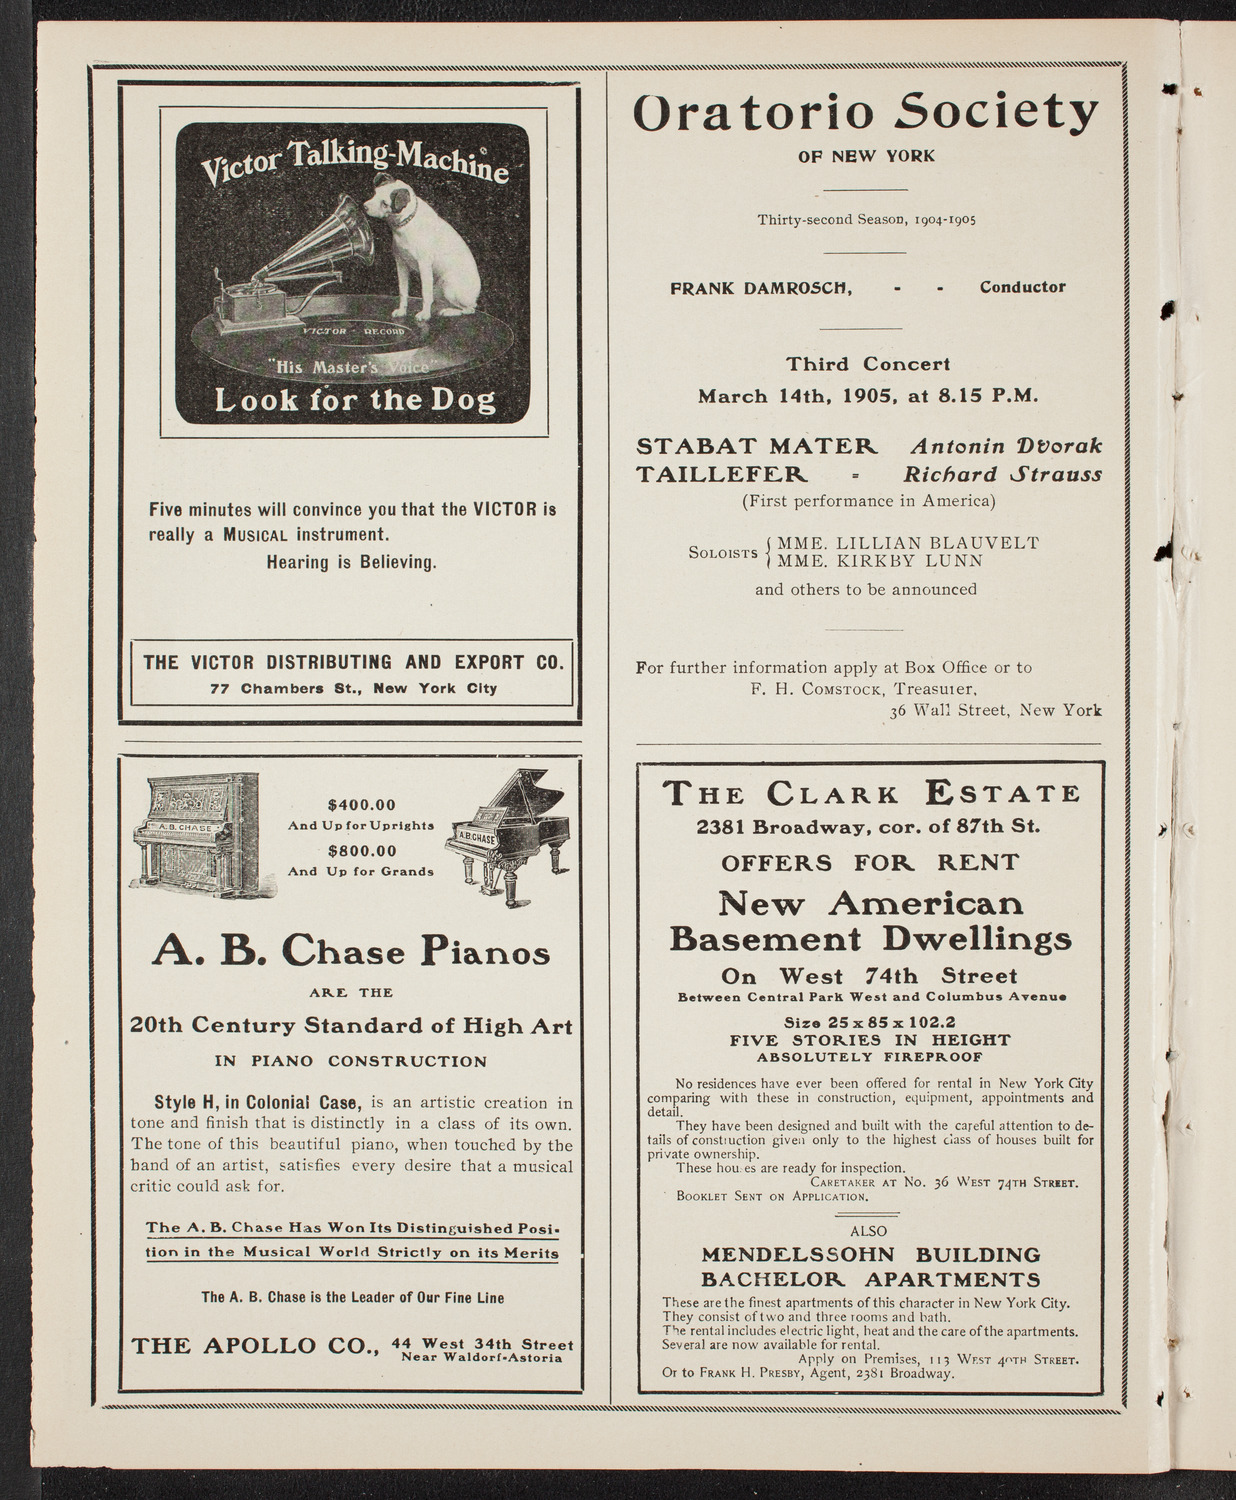 New York Philharmonic, January 27, 1905, program page 2